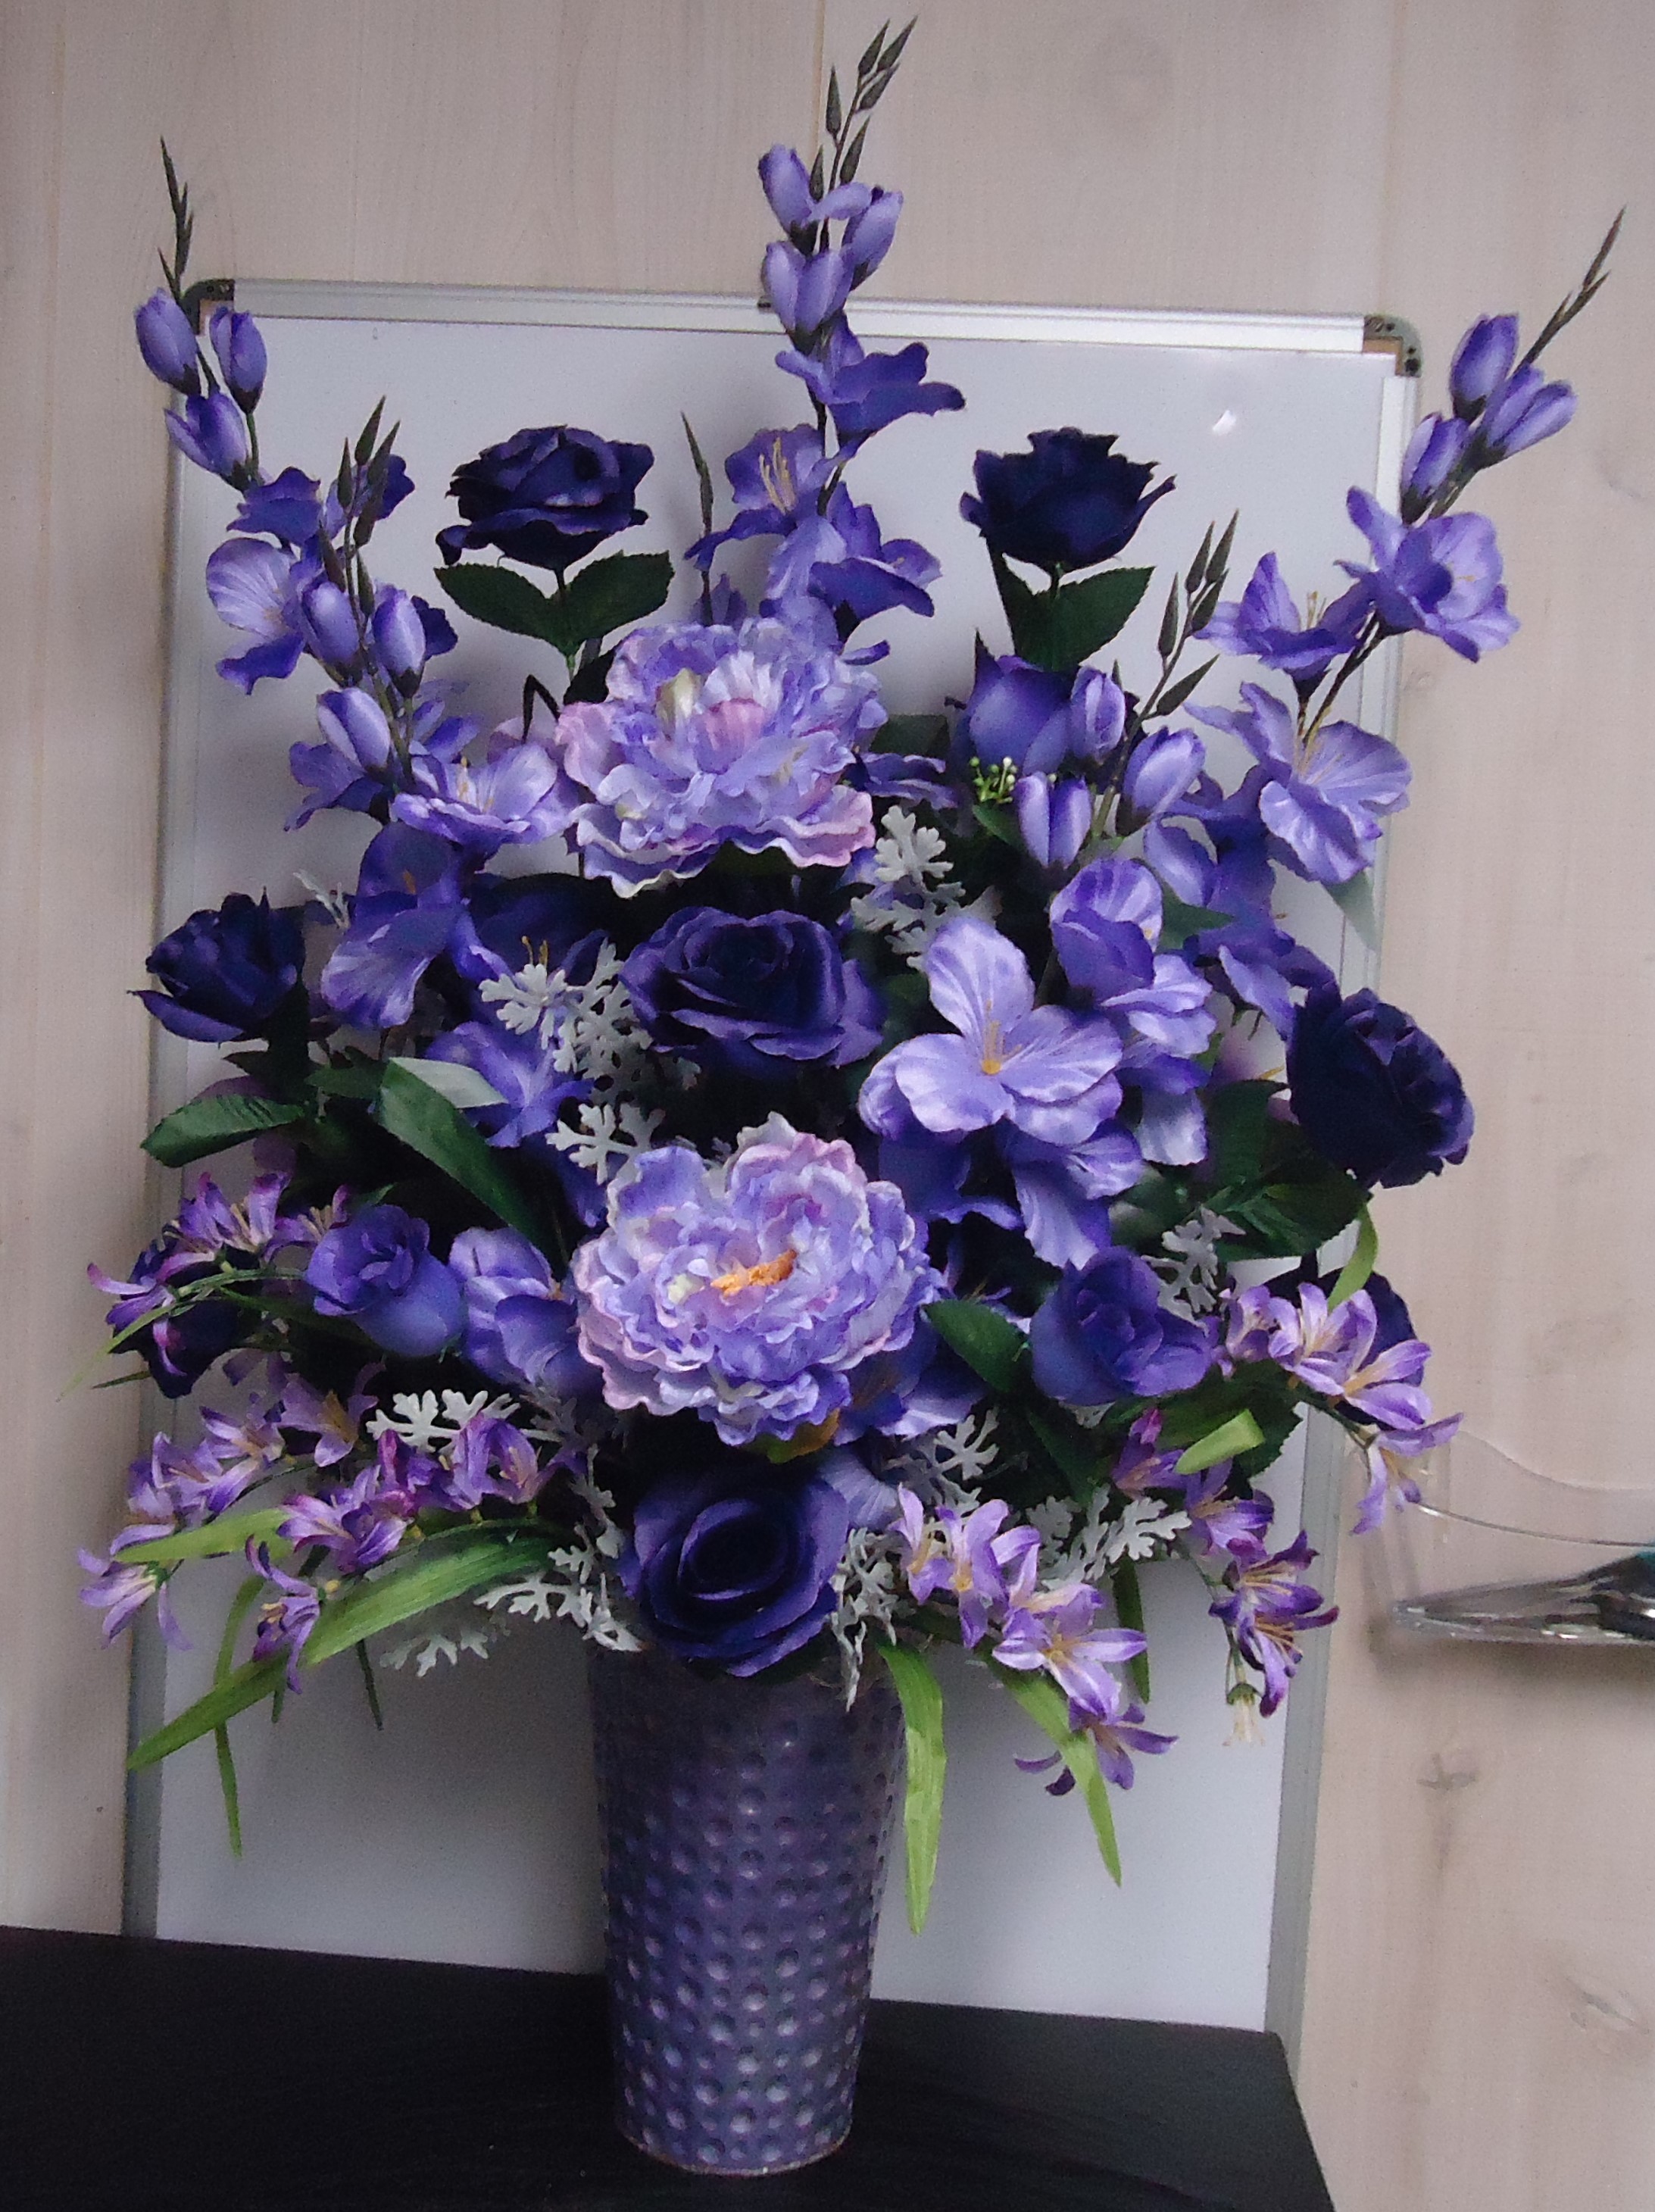 (8) "Silk" Vase Arrangement
(Purple & Lavender Mix)
$100.00